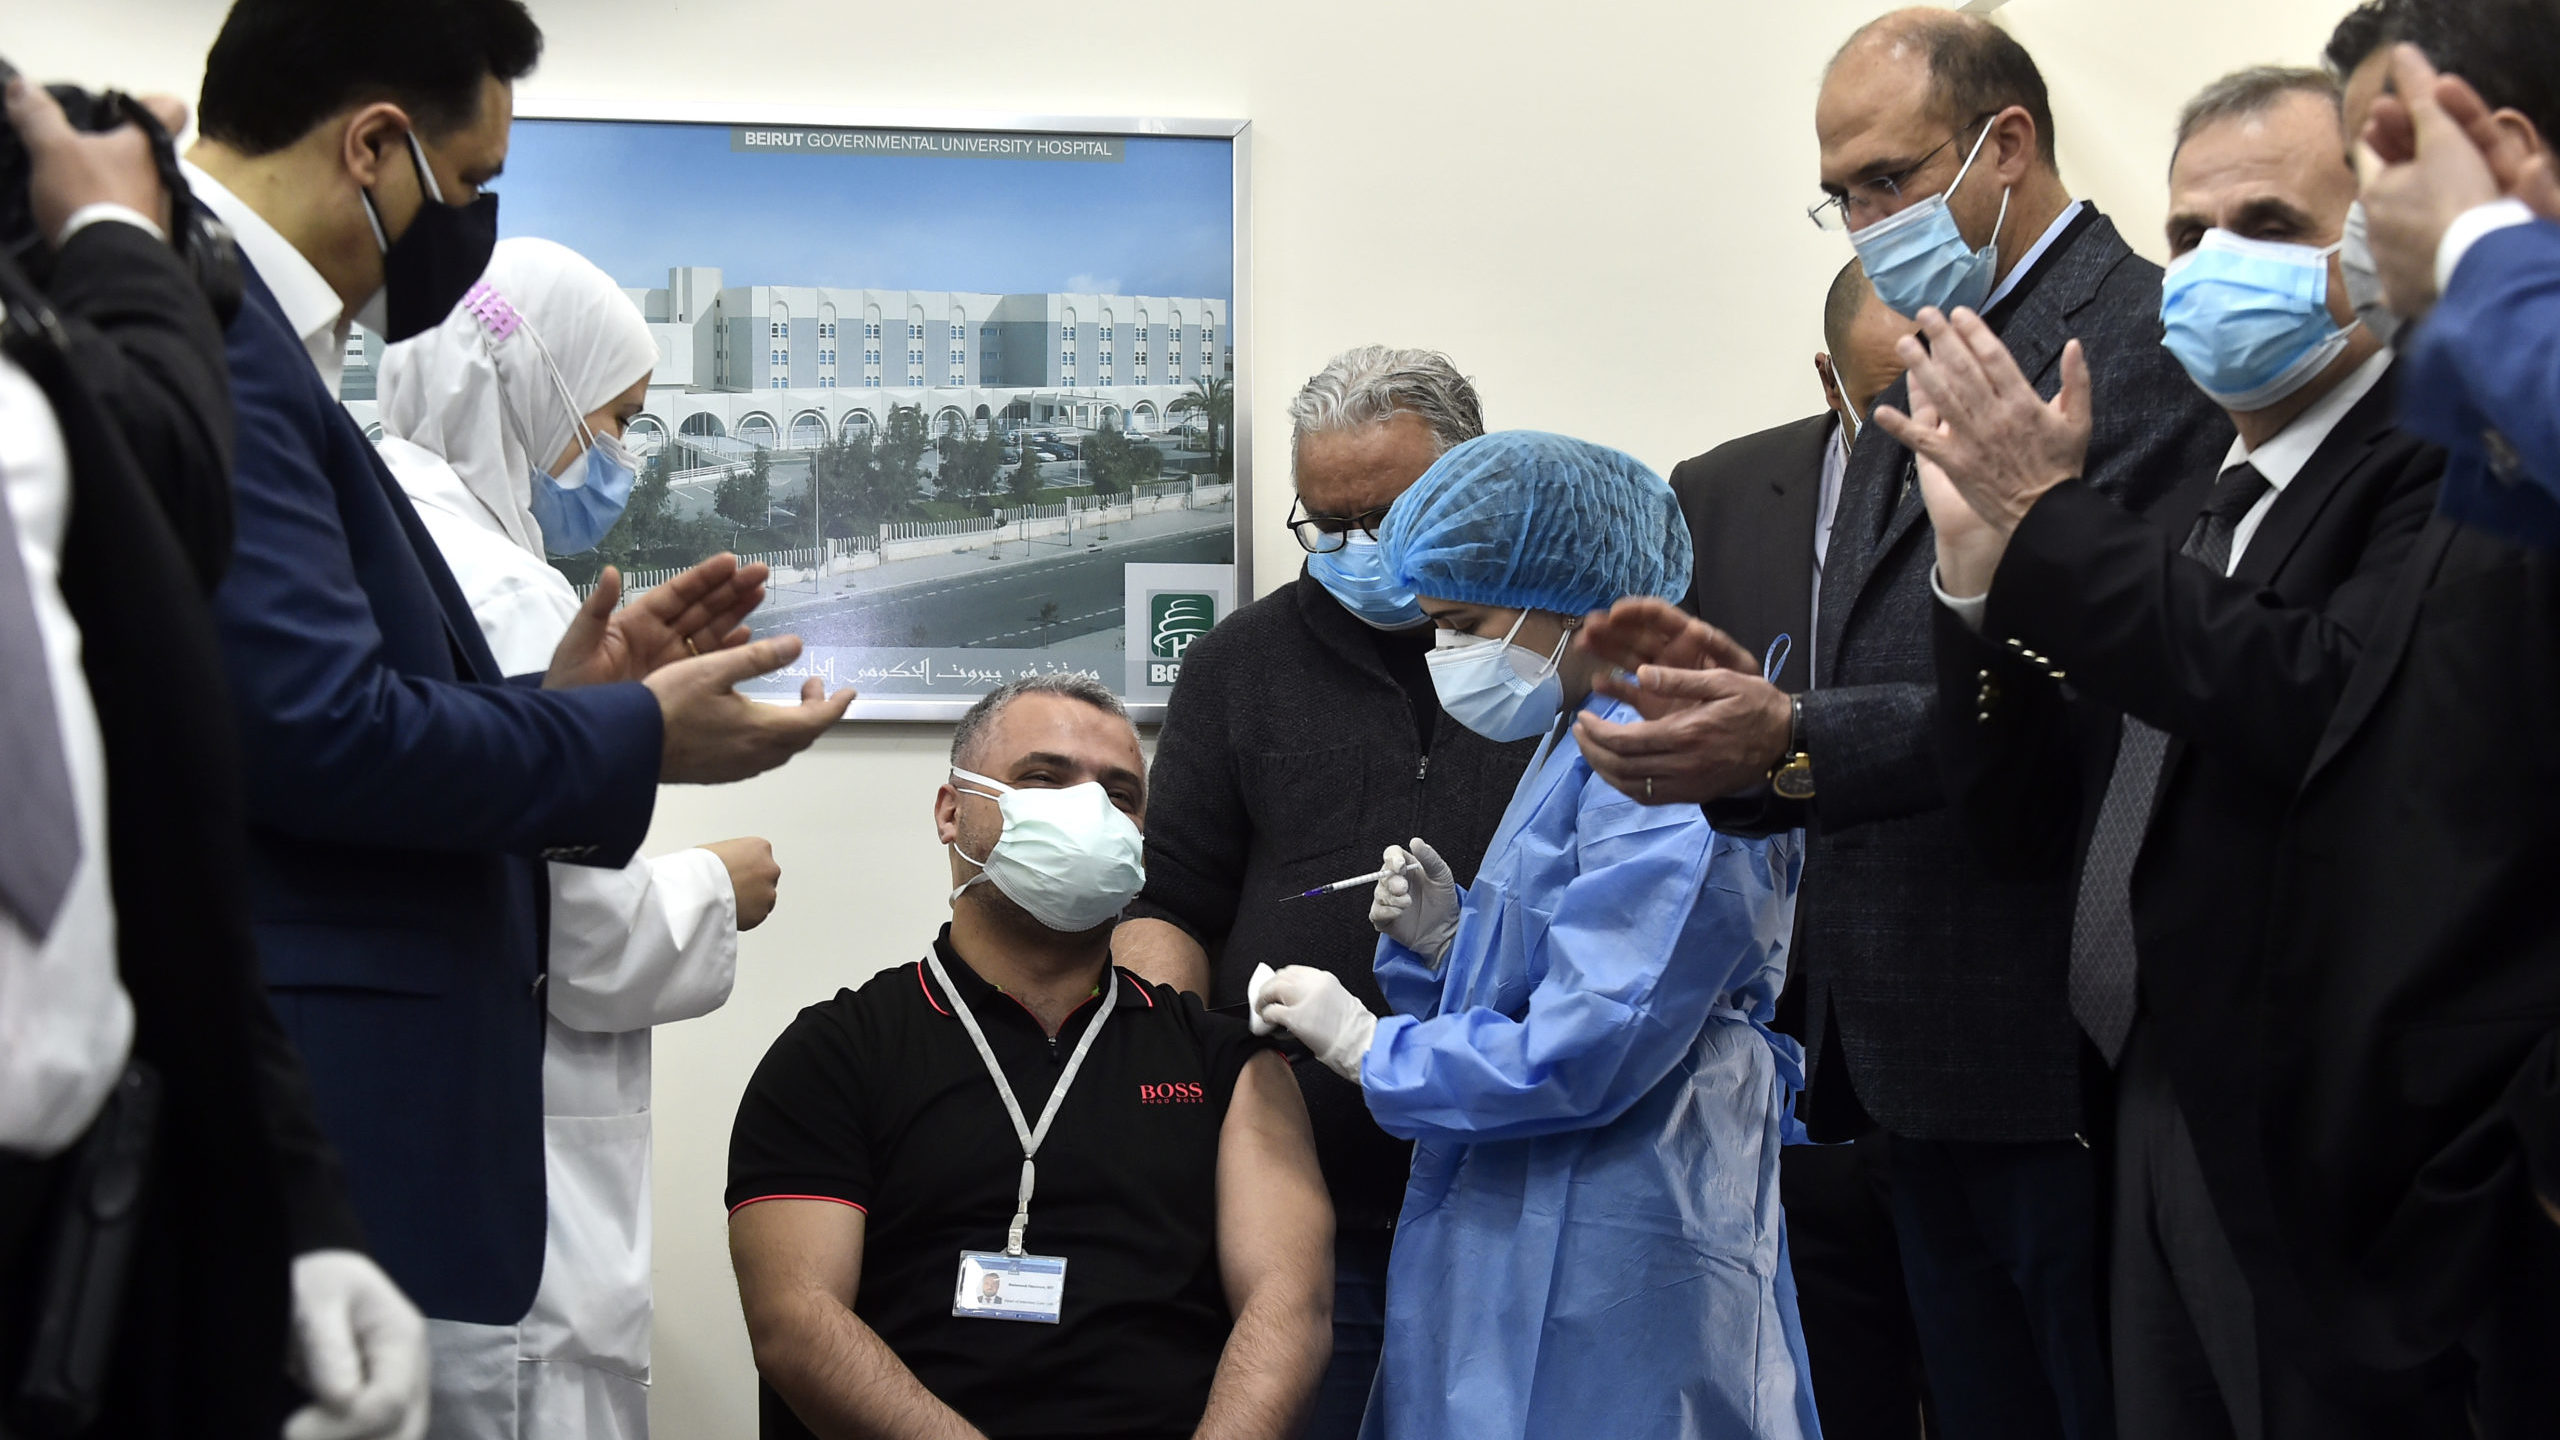 Beirut Begins Much-Needed Vaccination Effort 